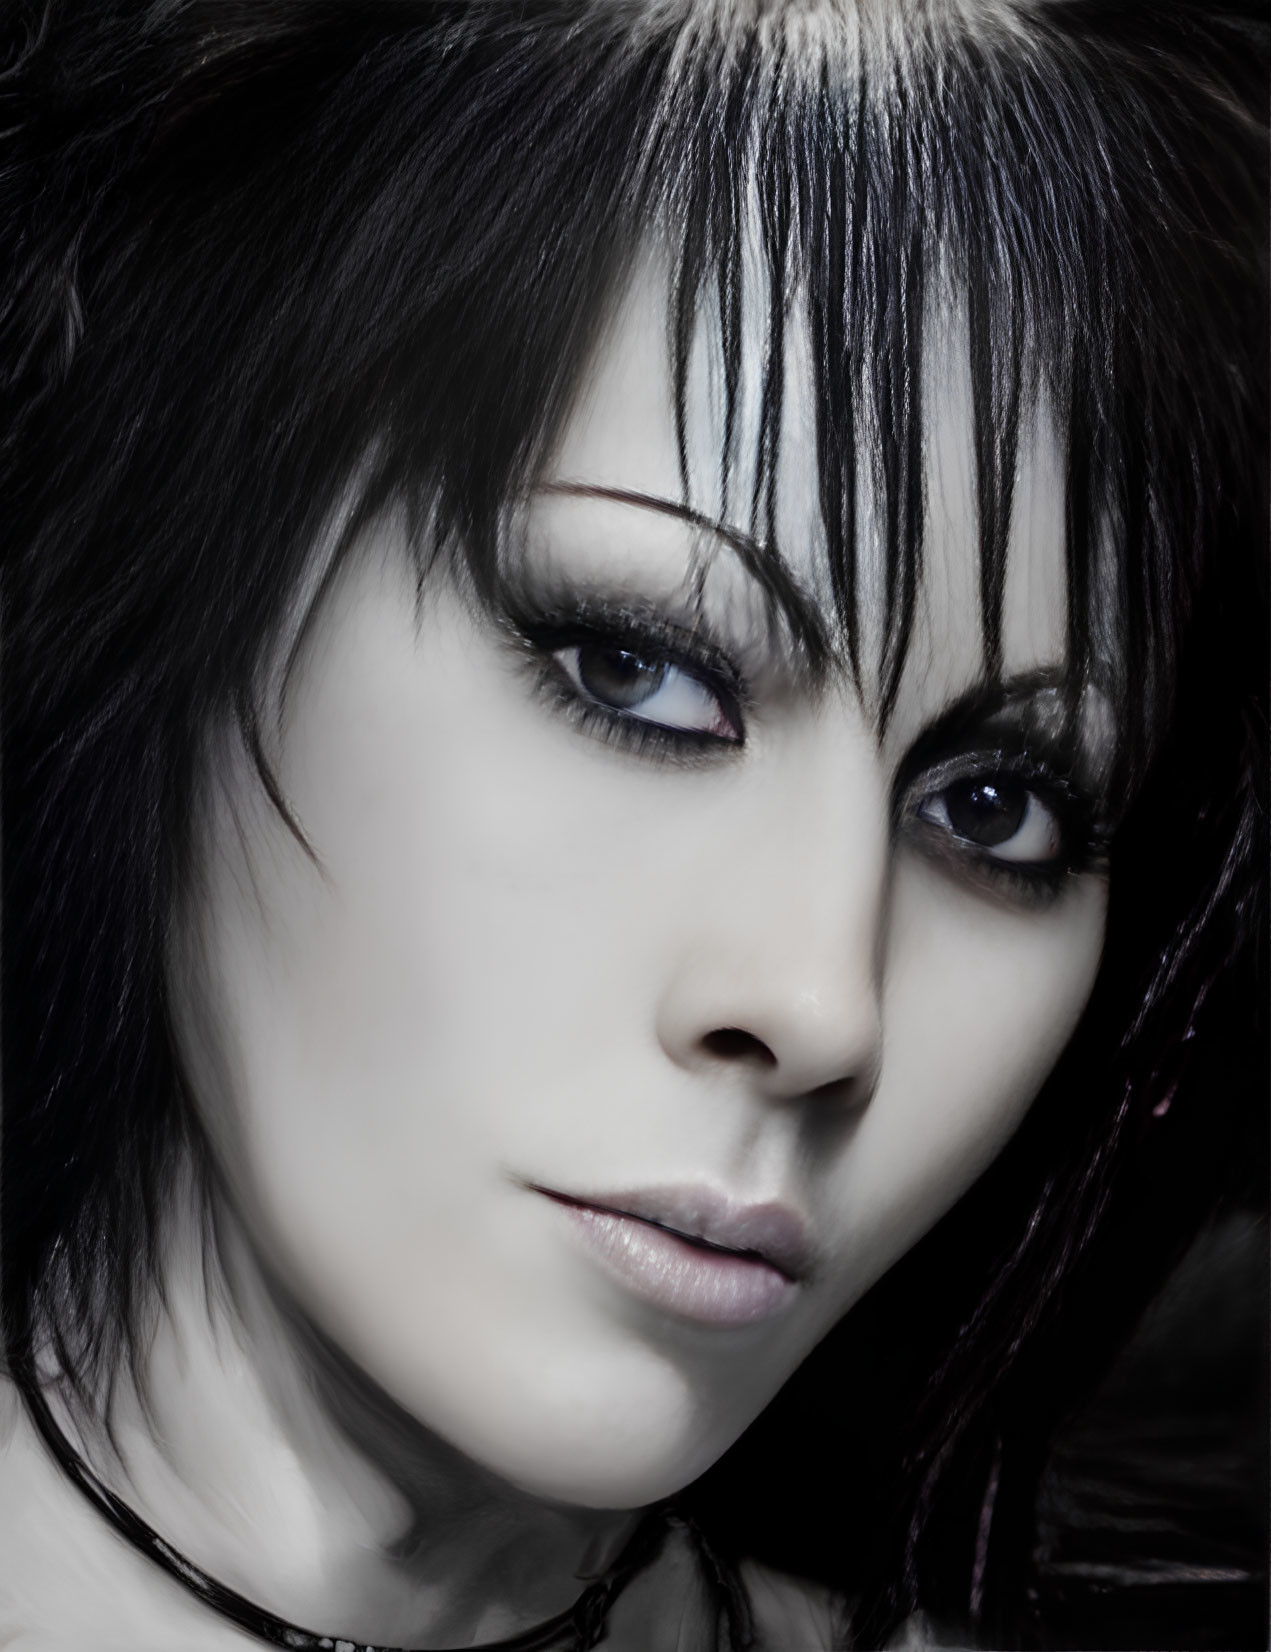 Striking makeup with pale skin, dark eye shadow, and intense gaze